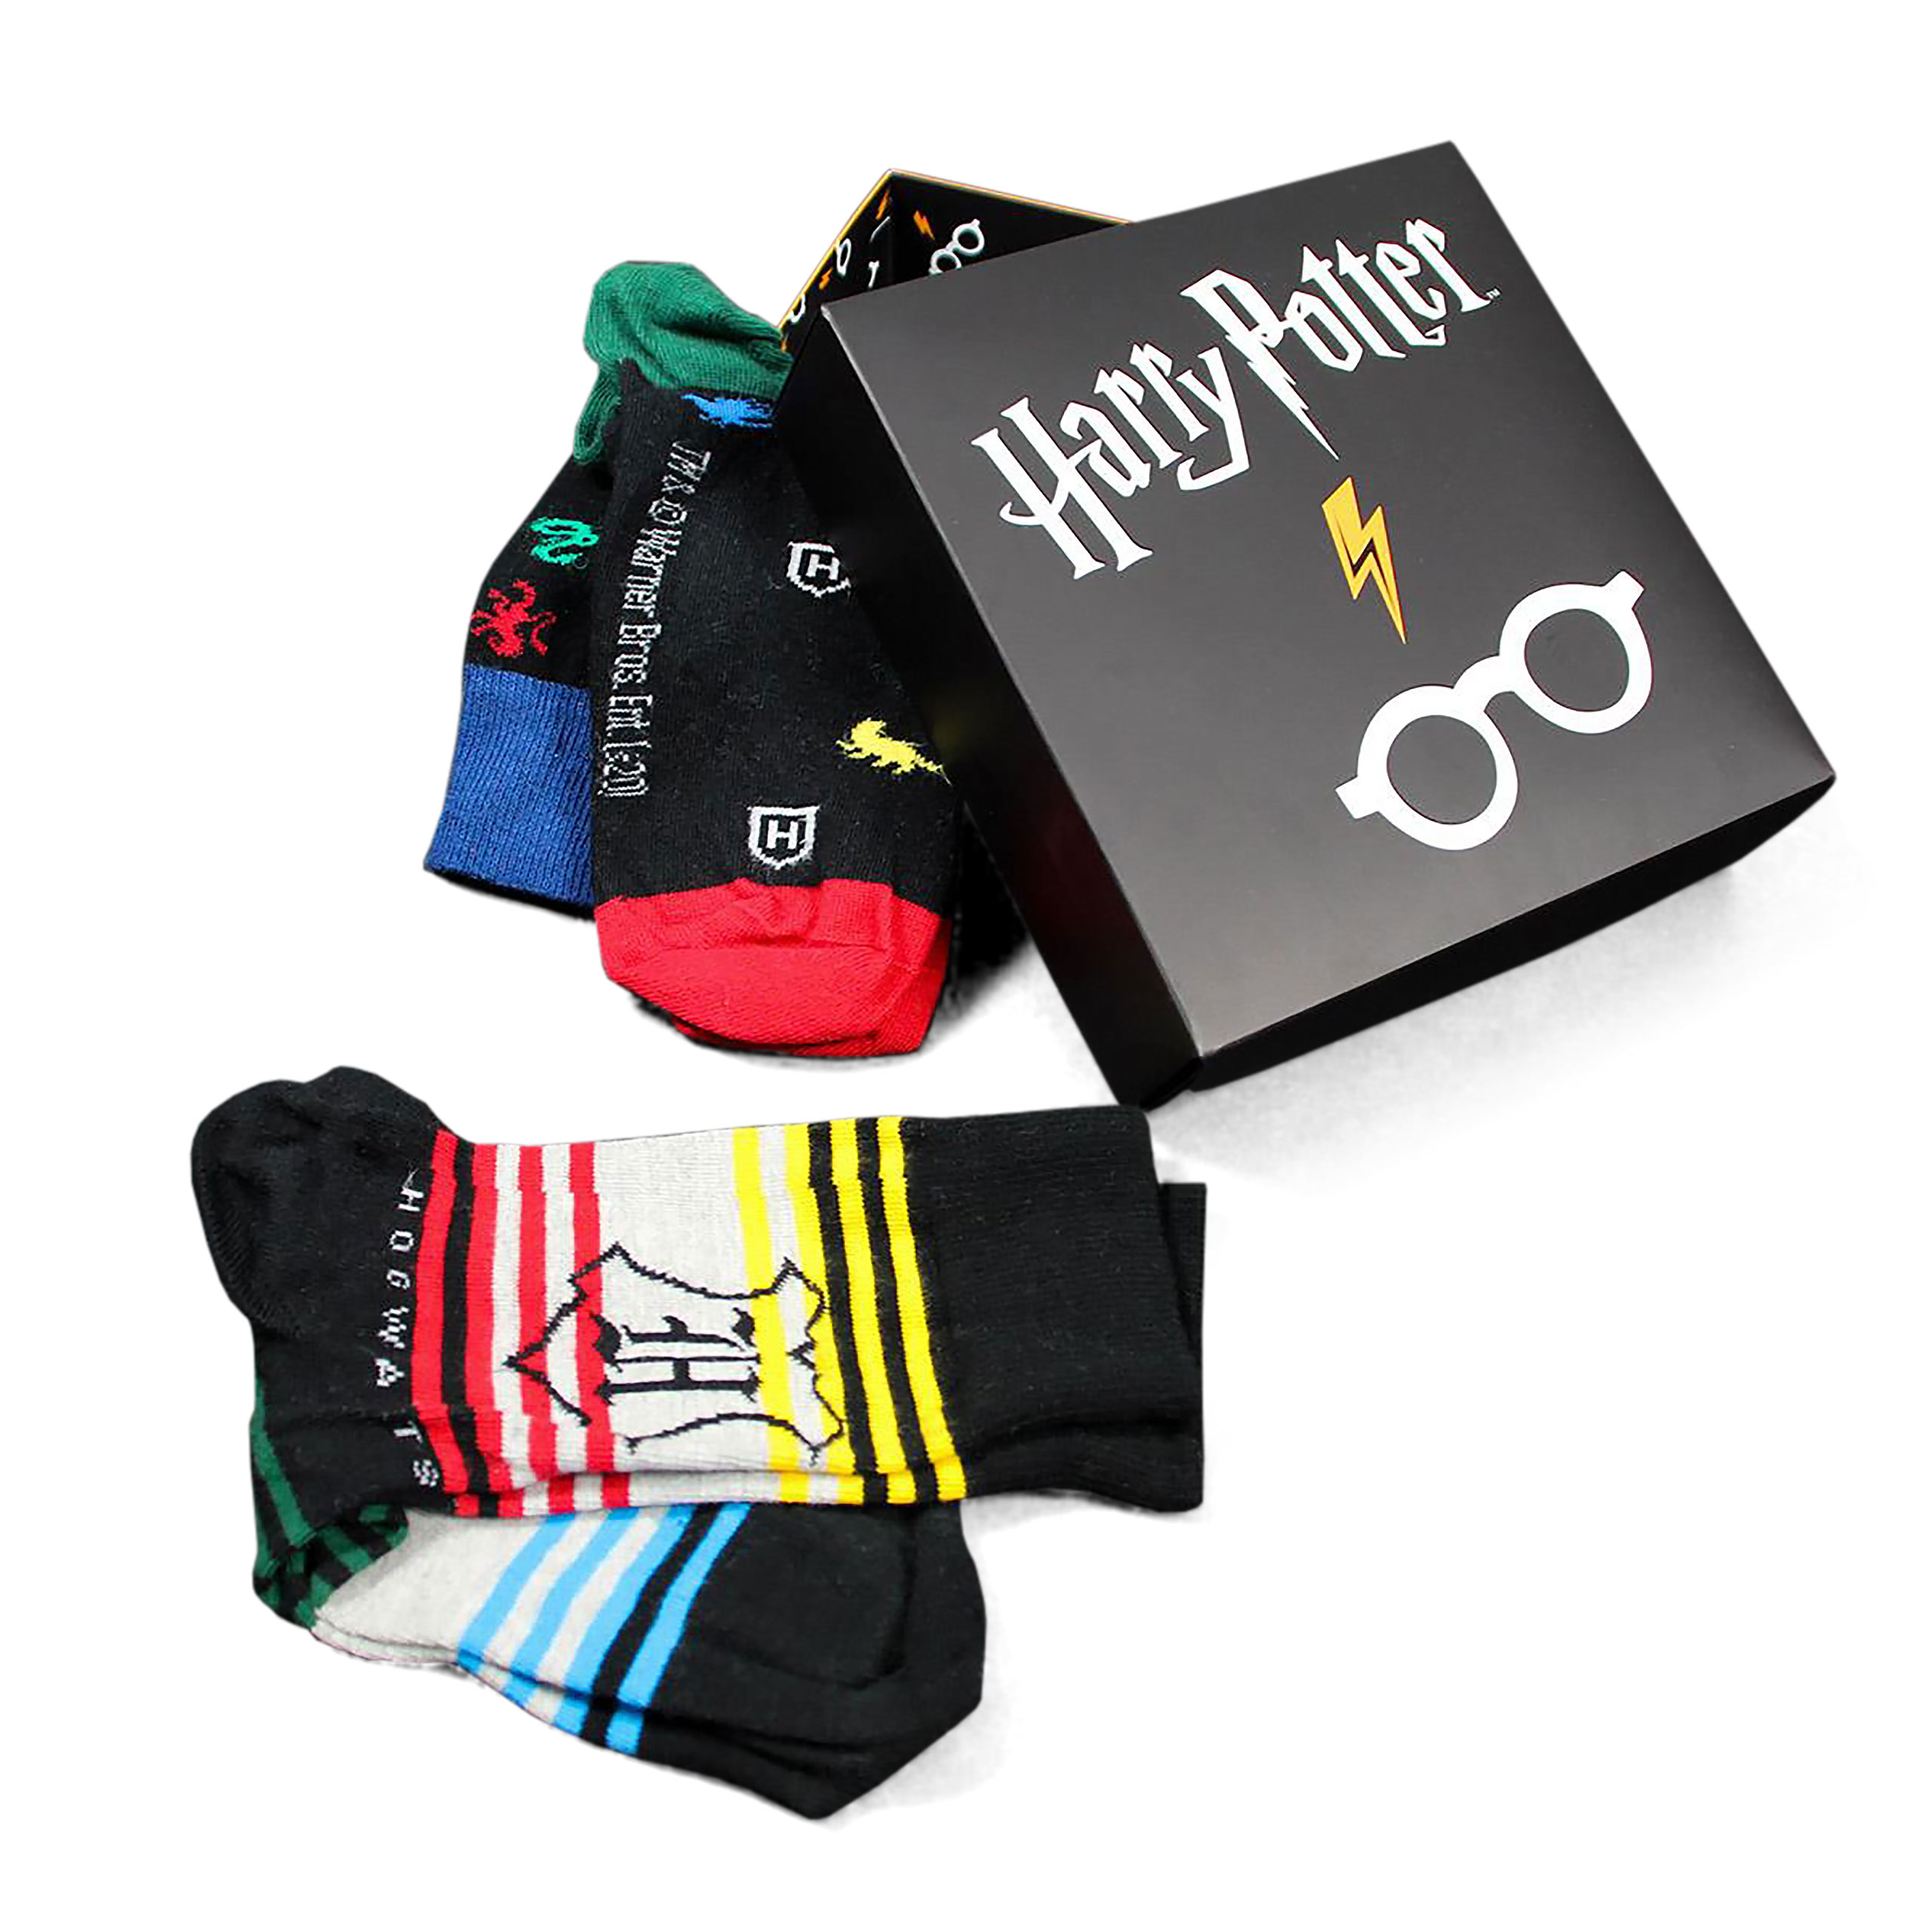 Harry Potter - Glasses and Lightning Socks 3 Set in Gift Box